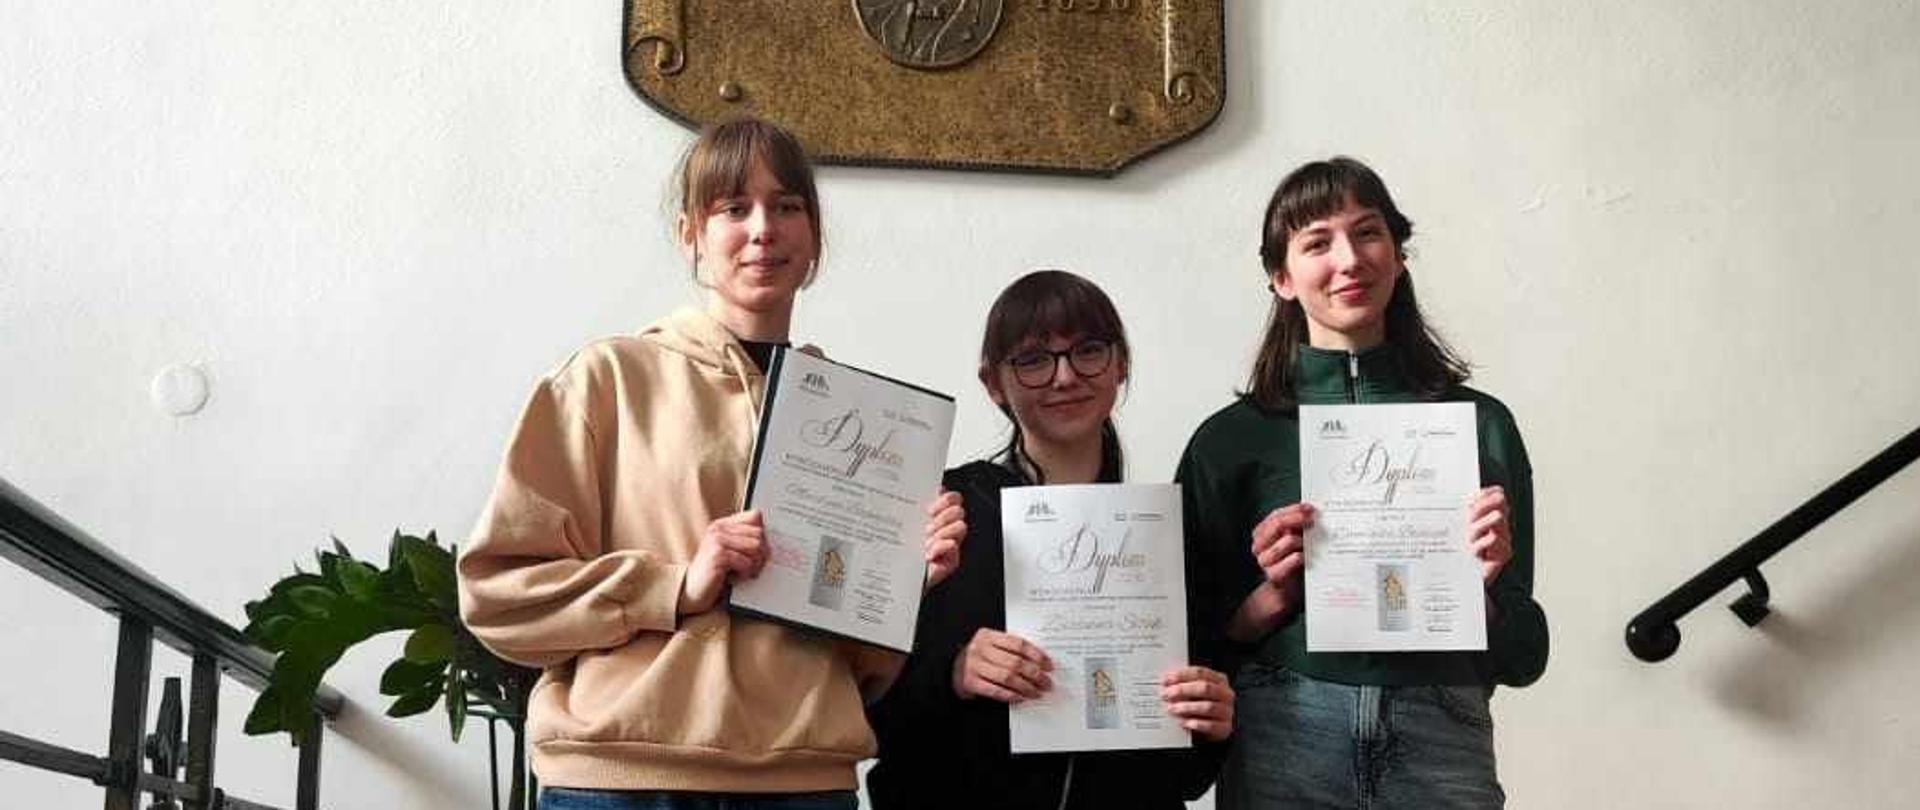 Trzy nastolatki trzymając dyplomy stoją na schodach PSM I i II st, im. Oskara Kolberga.